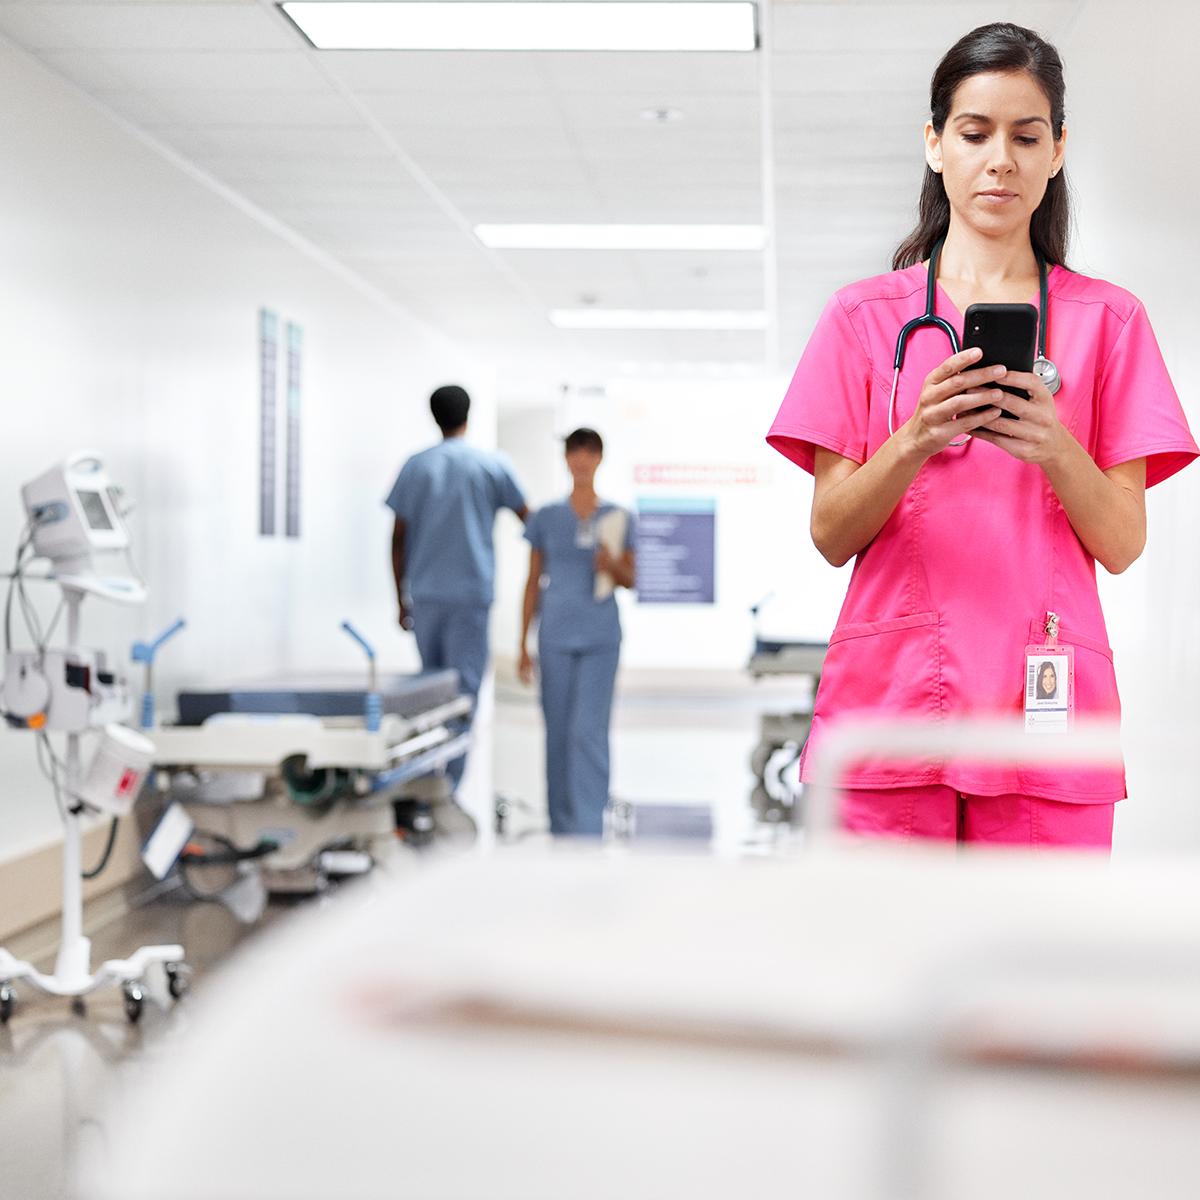 Une clinicienne vérifie son téléphone, debout dans un couloir d’hôpital. Elle porte une blouse chirurgicale rose.